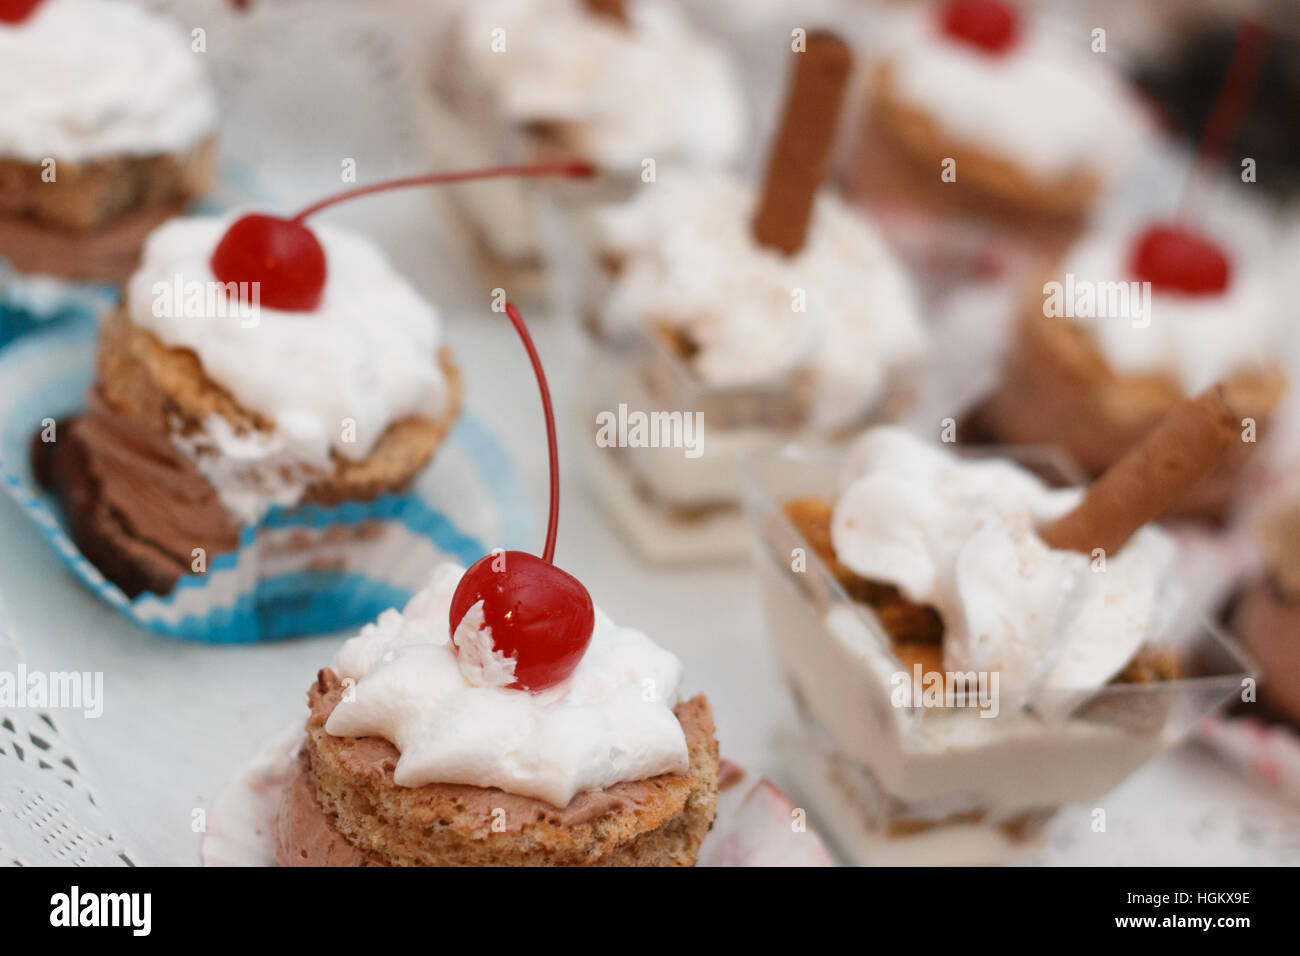 Dessert Mousse au Chocolat mit Schlagsahne mit Kirsche auf Top Shot bei künstlichem Licht Stockfoto